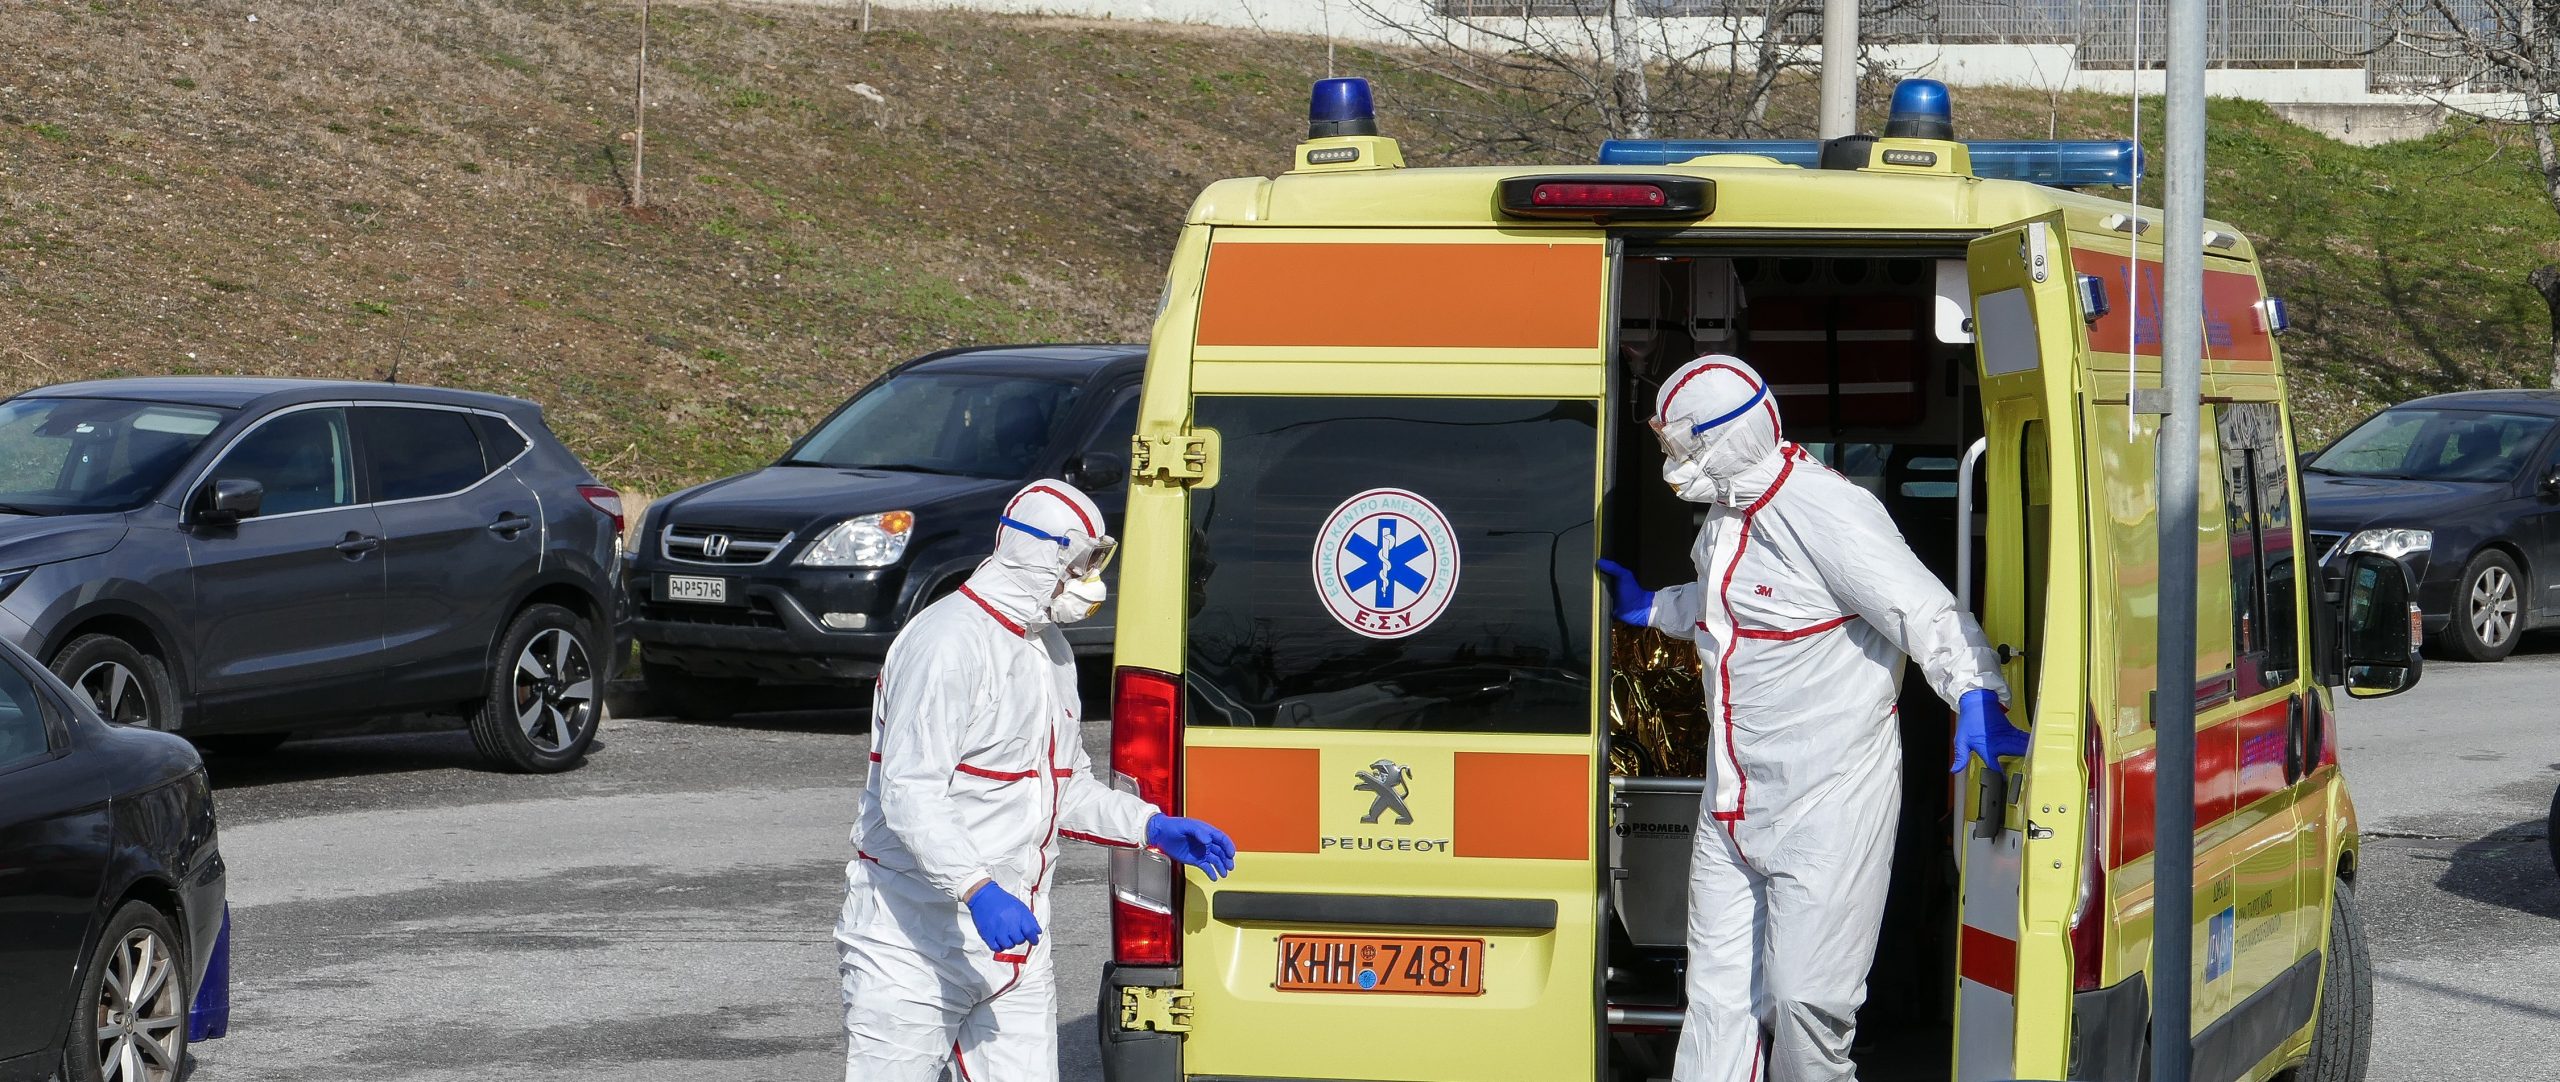 Κορωνοϊός: 99 τα κρούσματα στην Ελλάδα – Ανακοινώθηκαν άλλα 10 – Σε κρίσιμη κατάσταση 2 ασθενείς